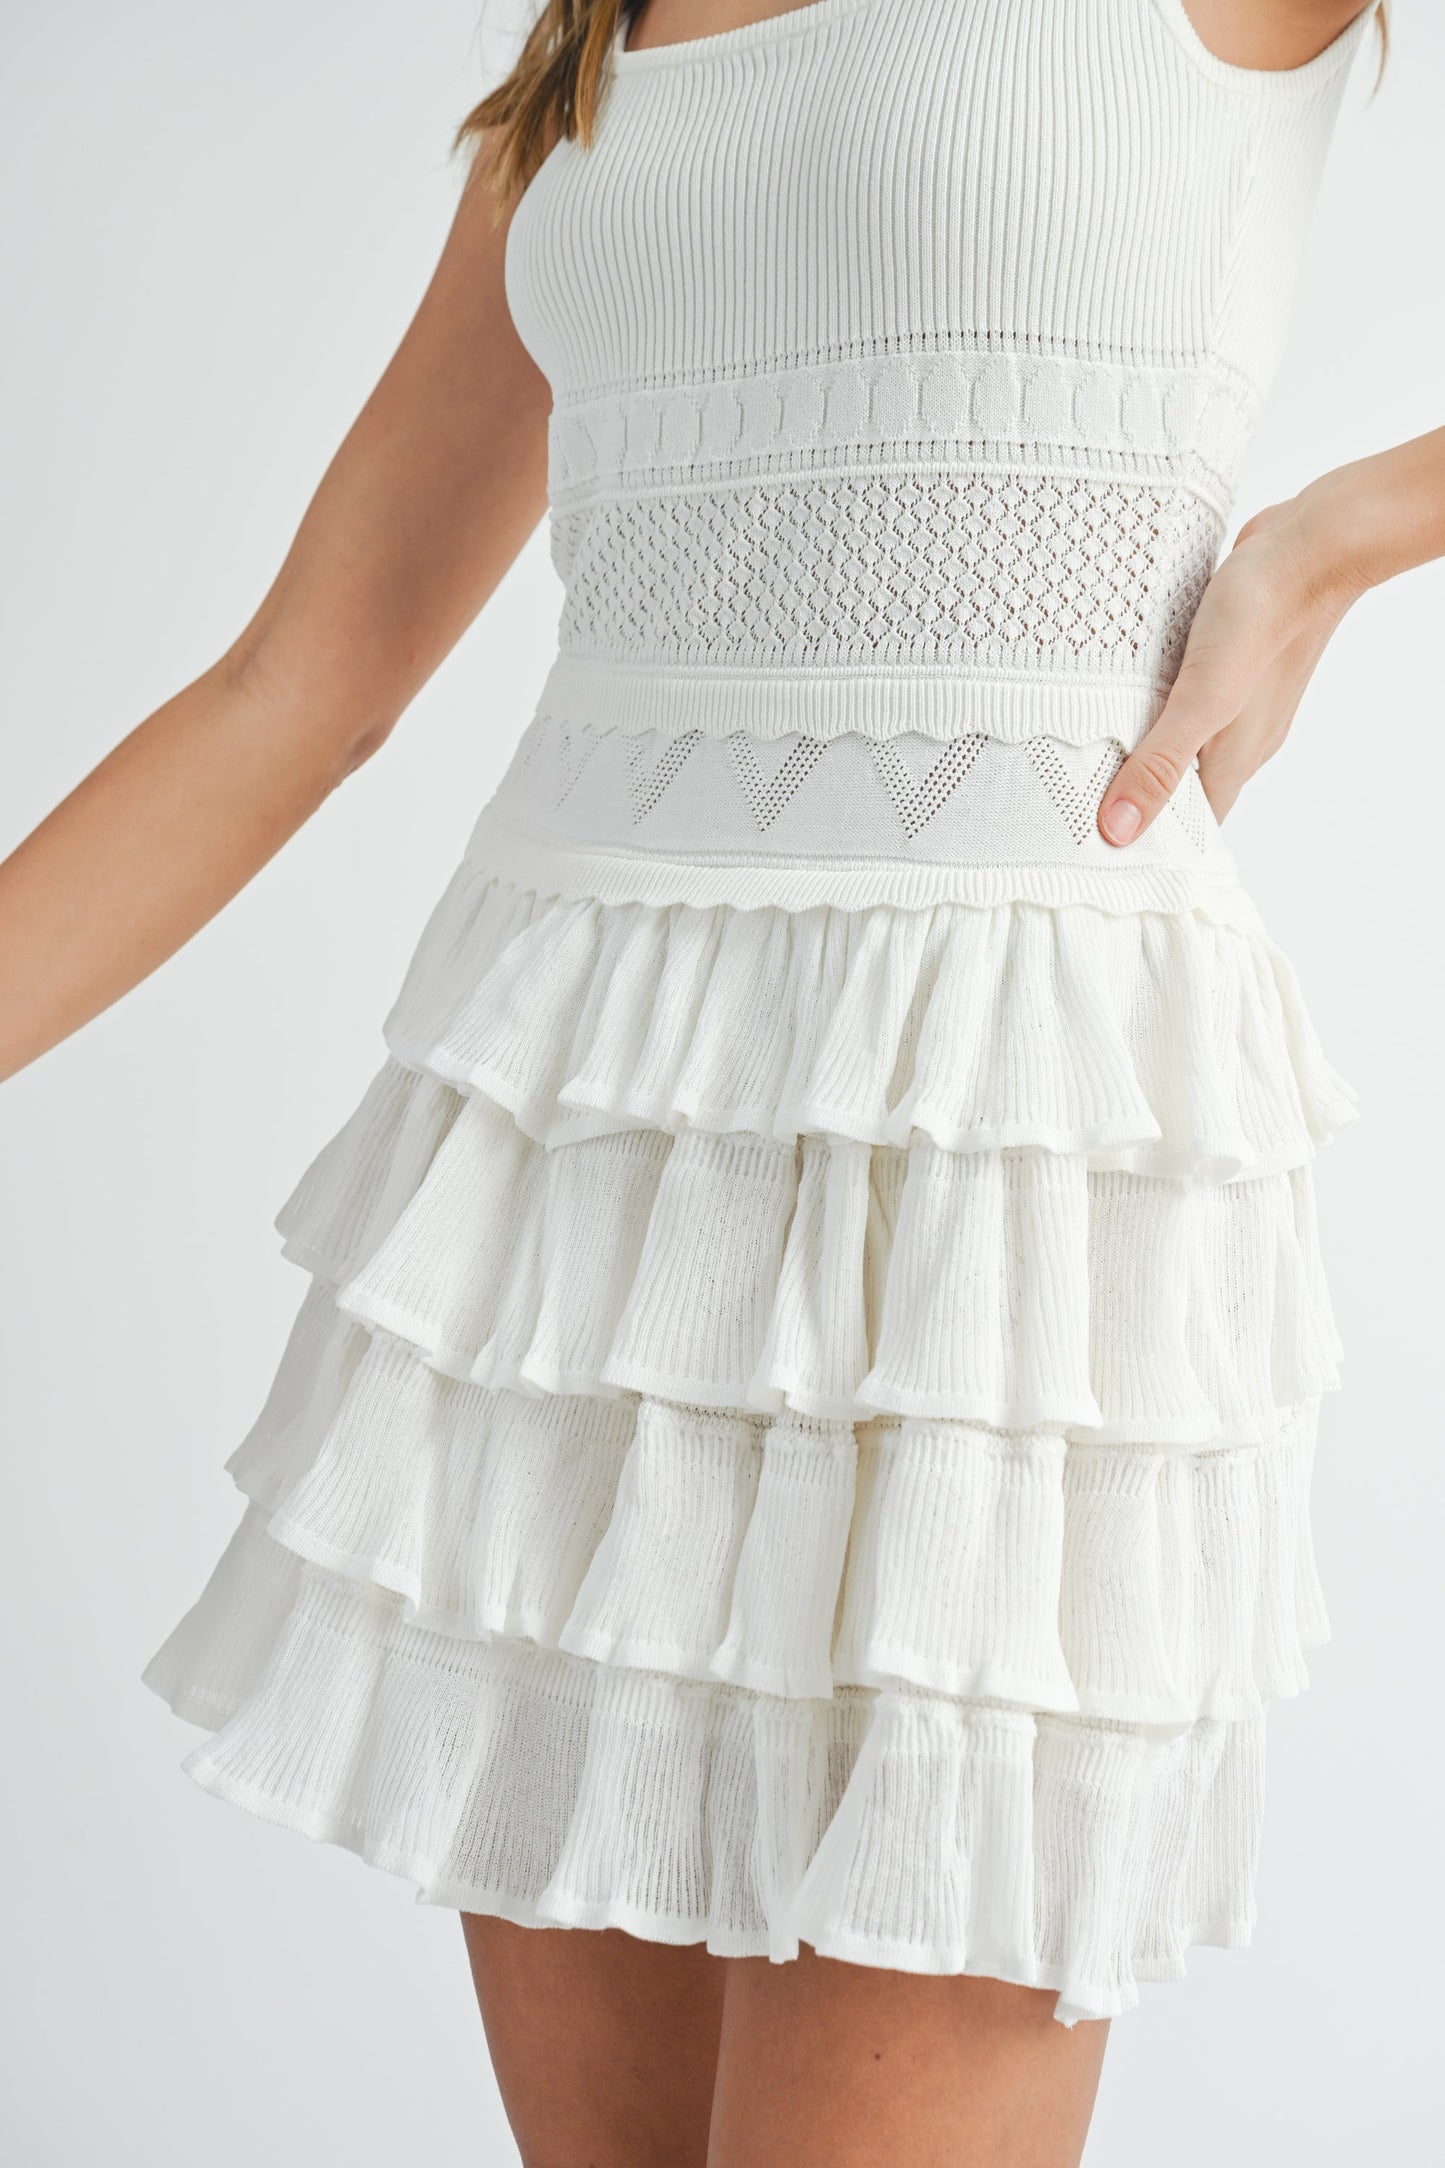 Ruffle Sweater Knit Dress (Off White)